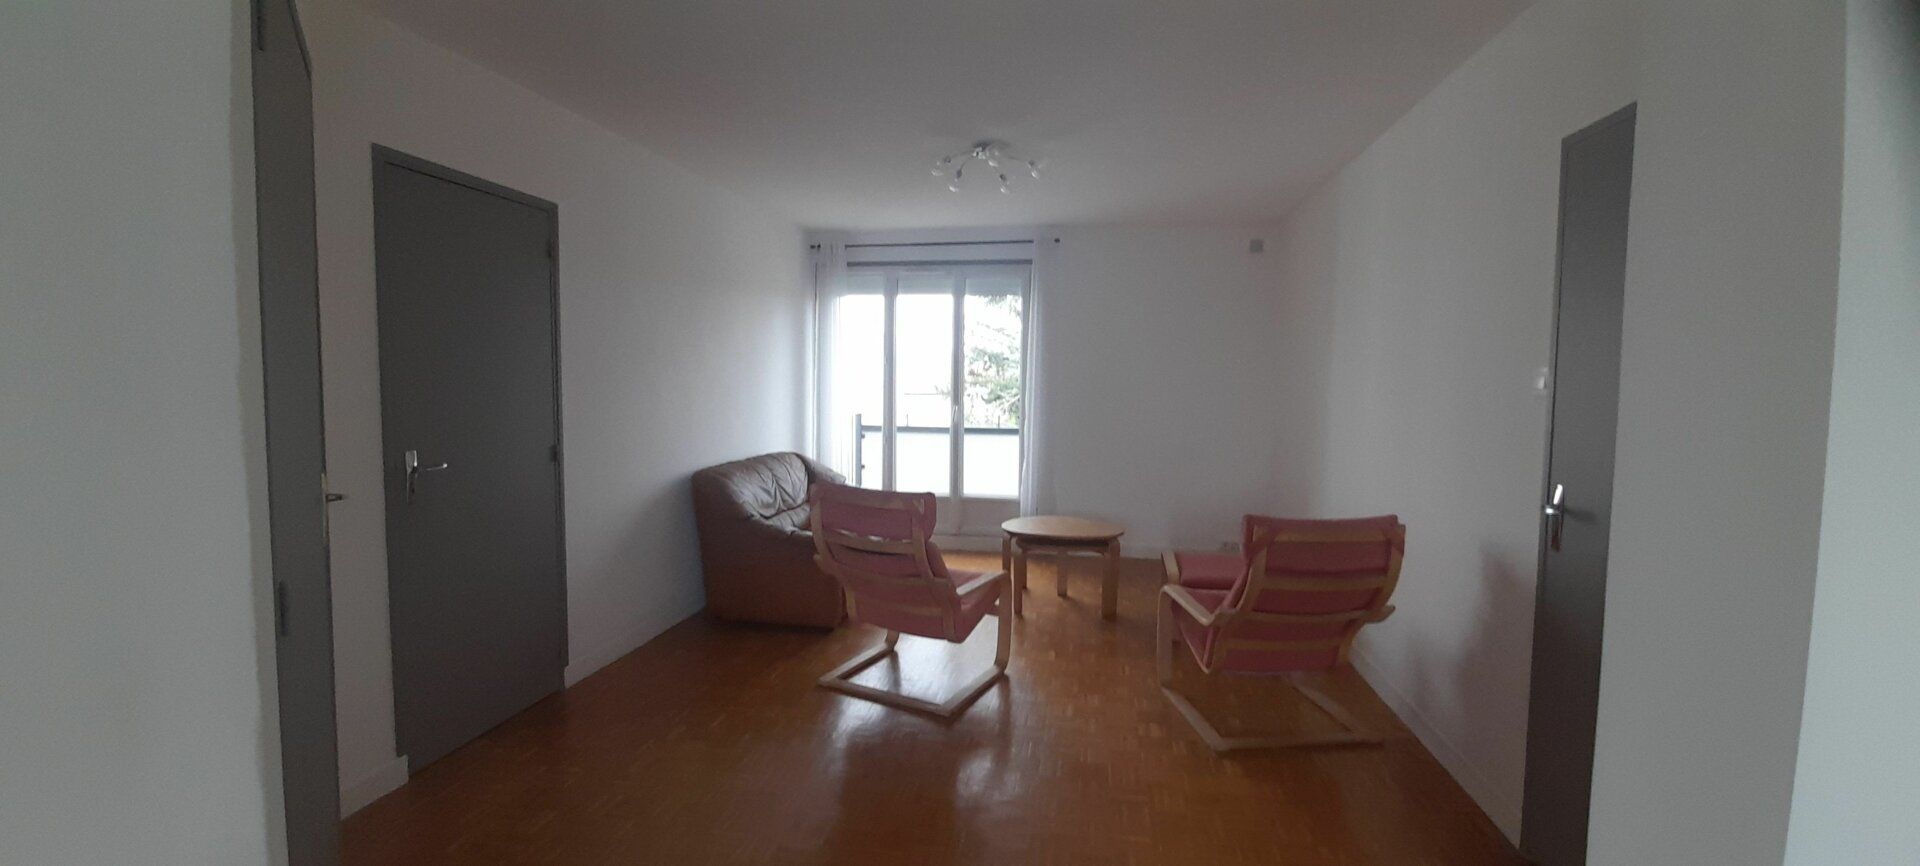 Appartement à vendre 3 67.05m2 à Bourg-en-Bresse vignette-9